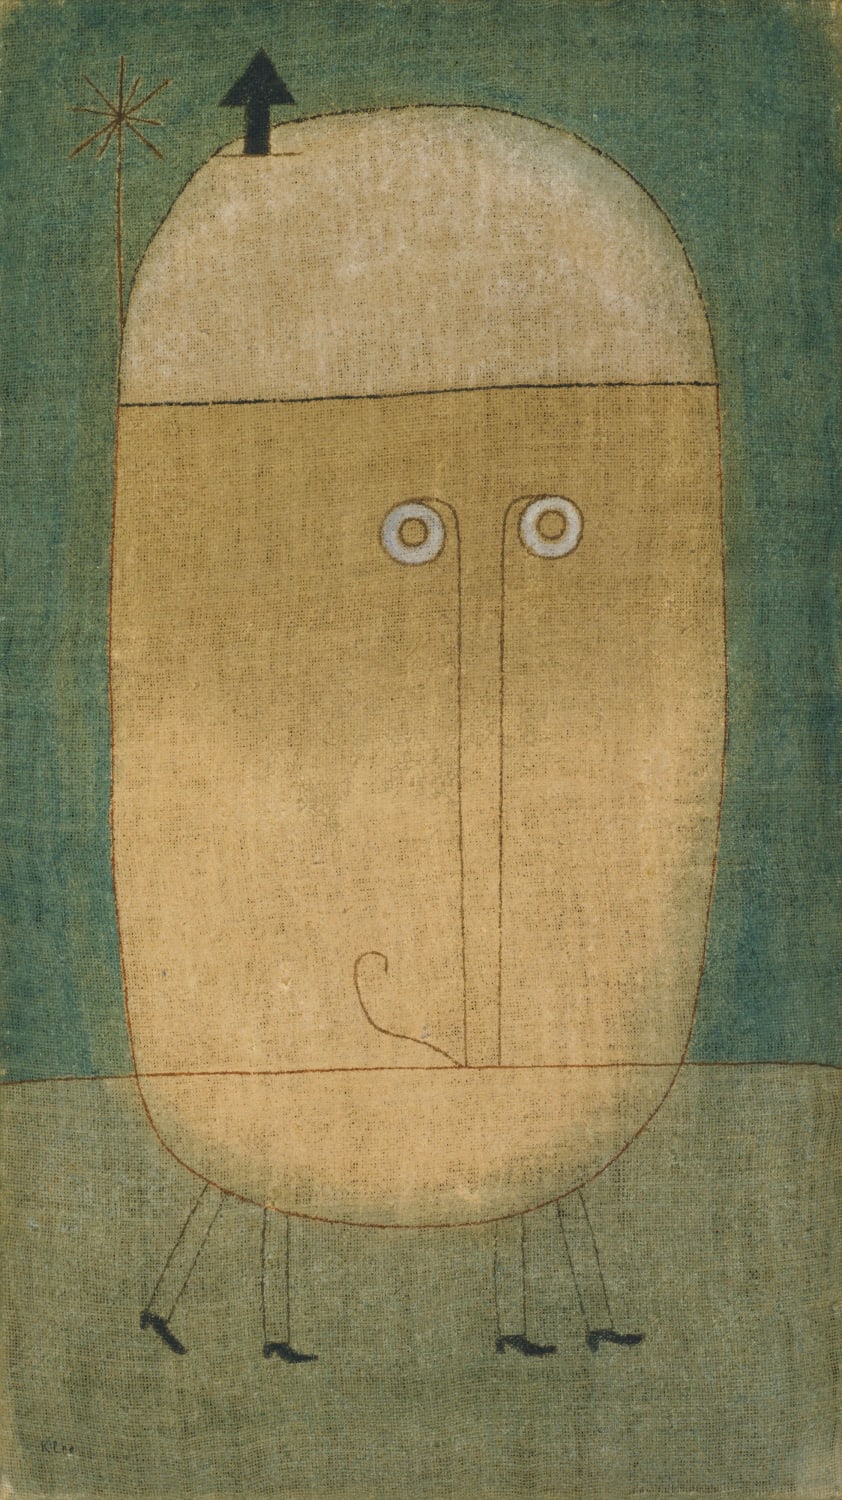 Paul Klee (1879-1940) - Mask of Fear